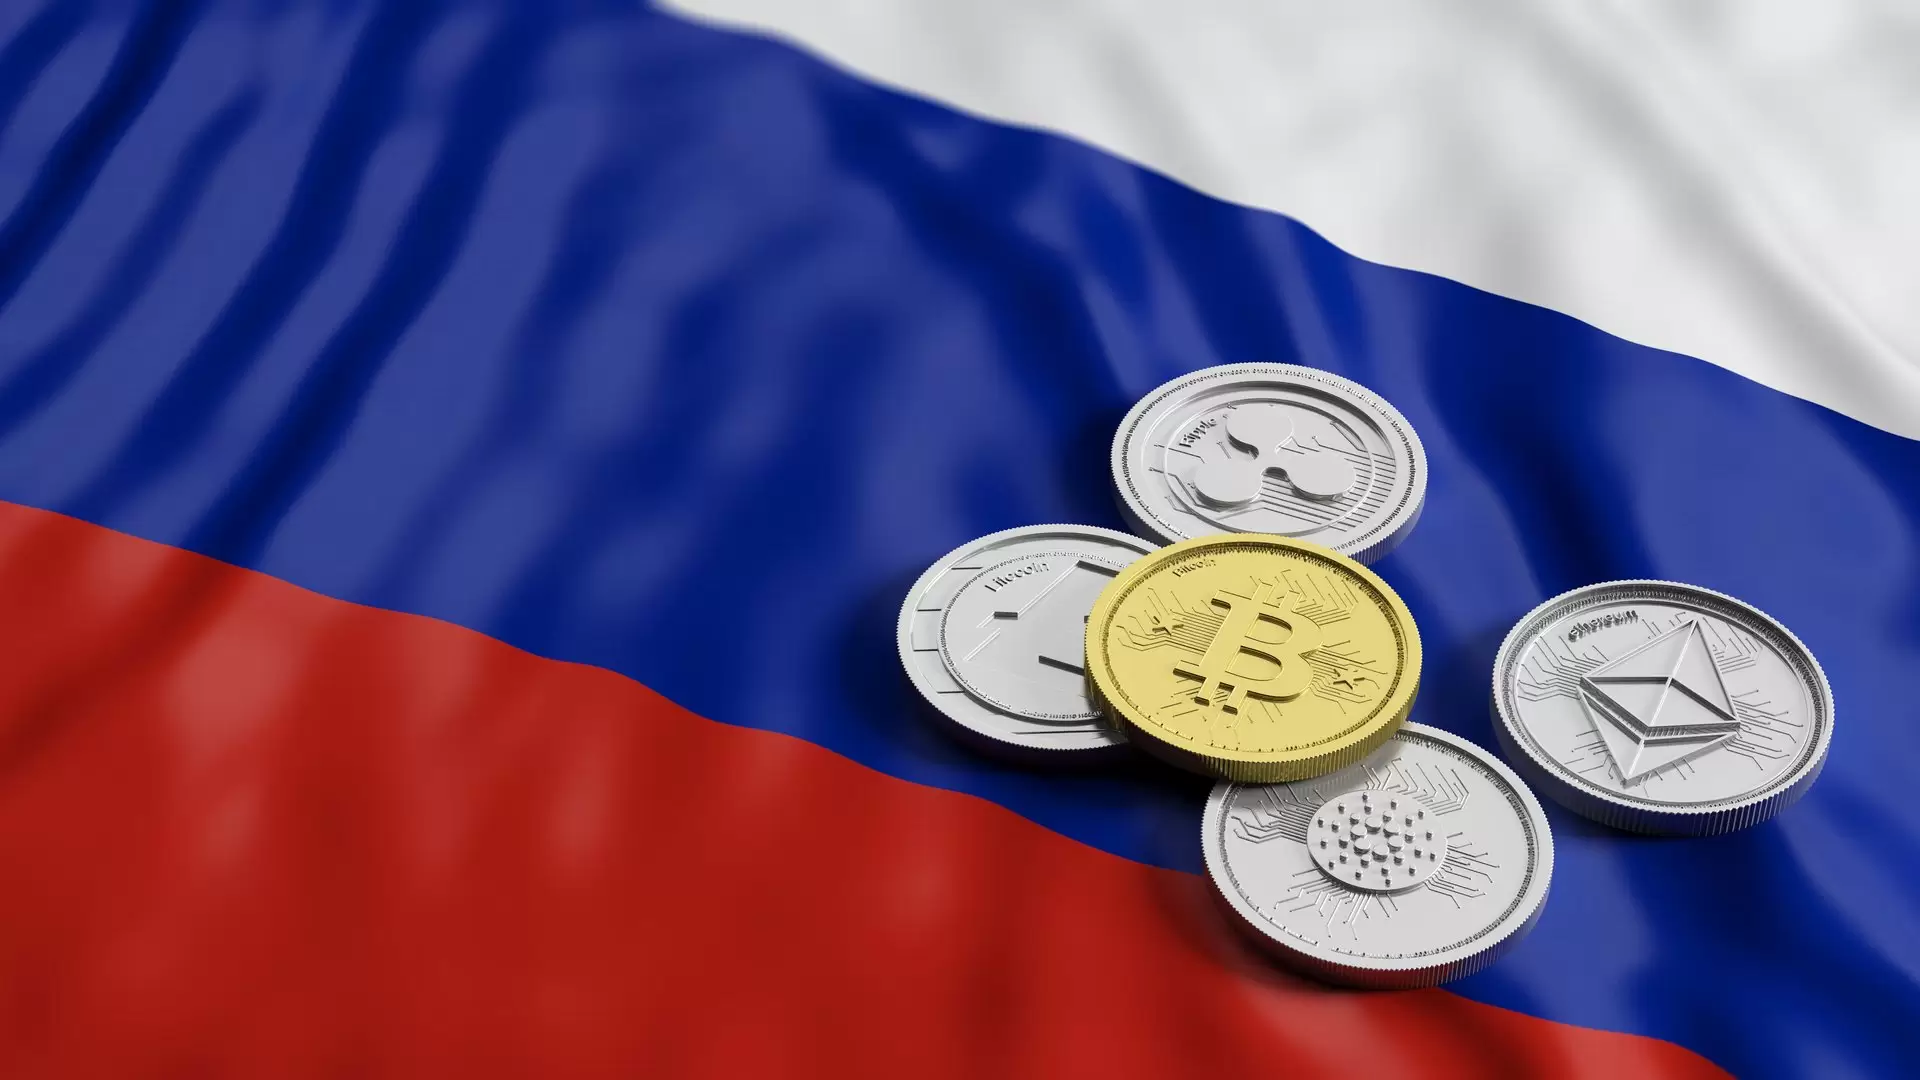 SICAK GELİŞME: Rusya, Kripto Paraları “Para” Olarak Tanıyabilir!